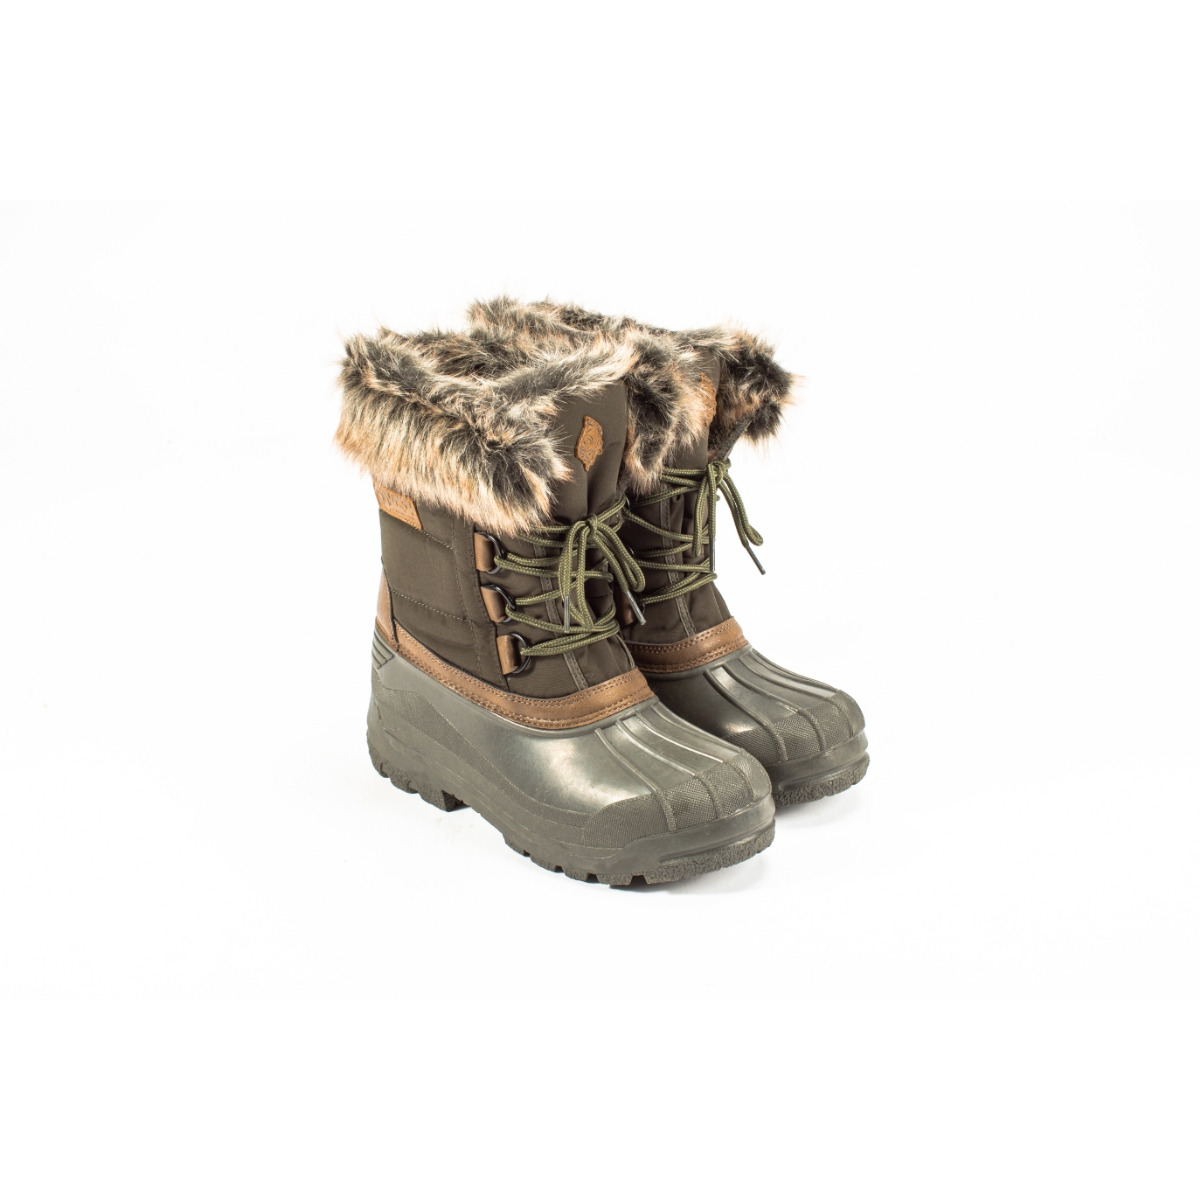 Nash Zt Polar Boots - Size 10